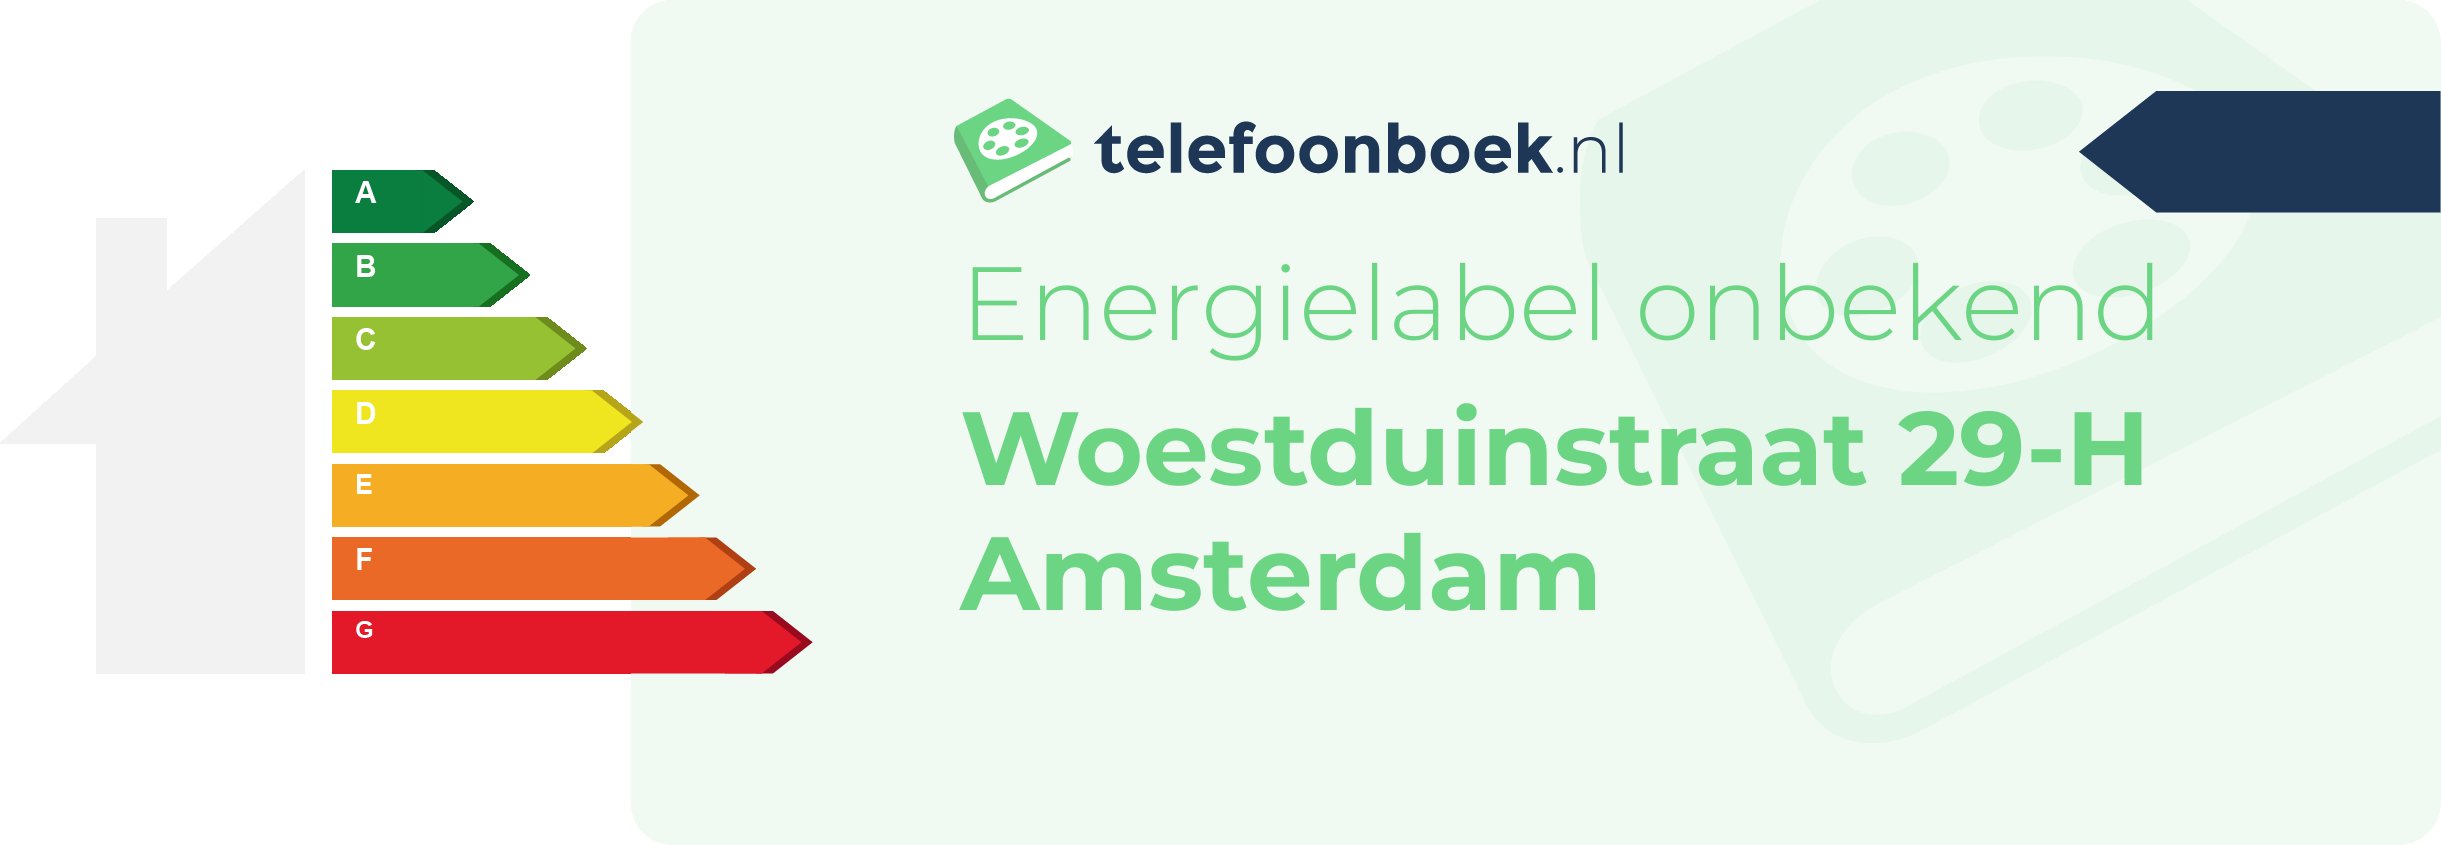 Energielabel Woestduinstraat 29-H Amsterdam